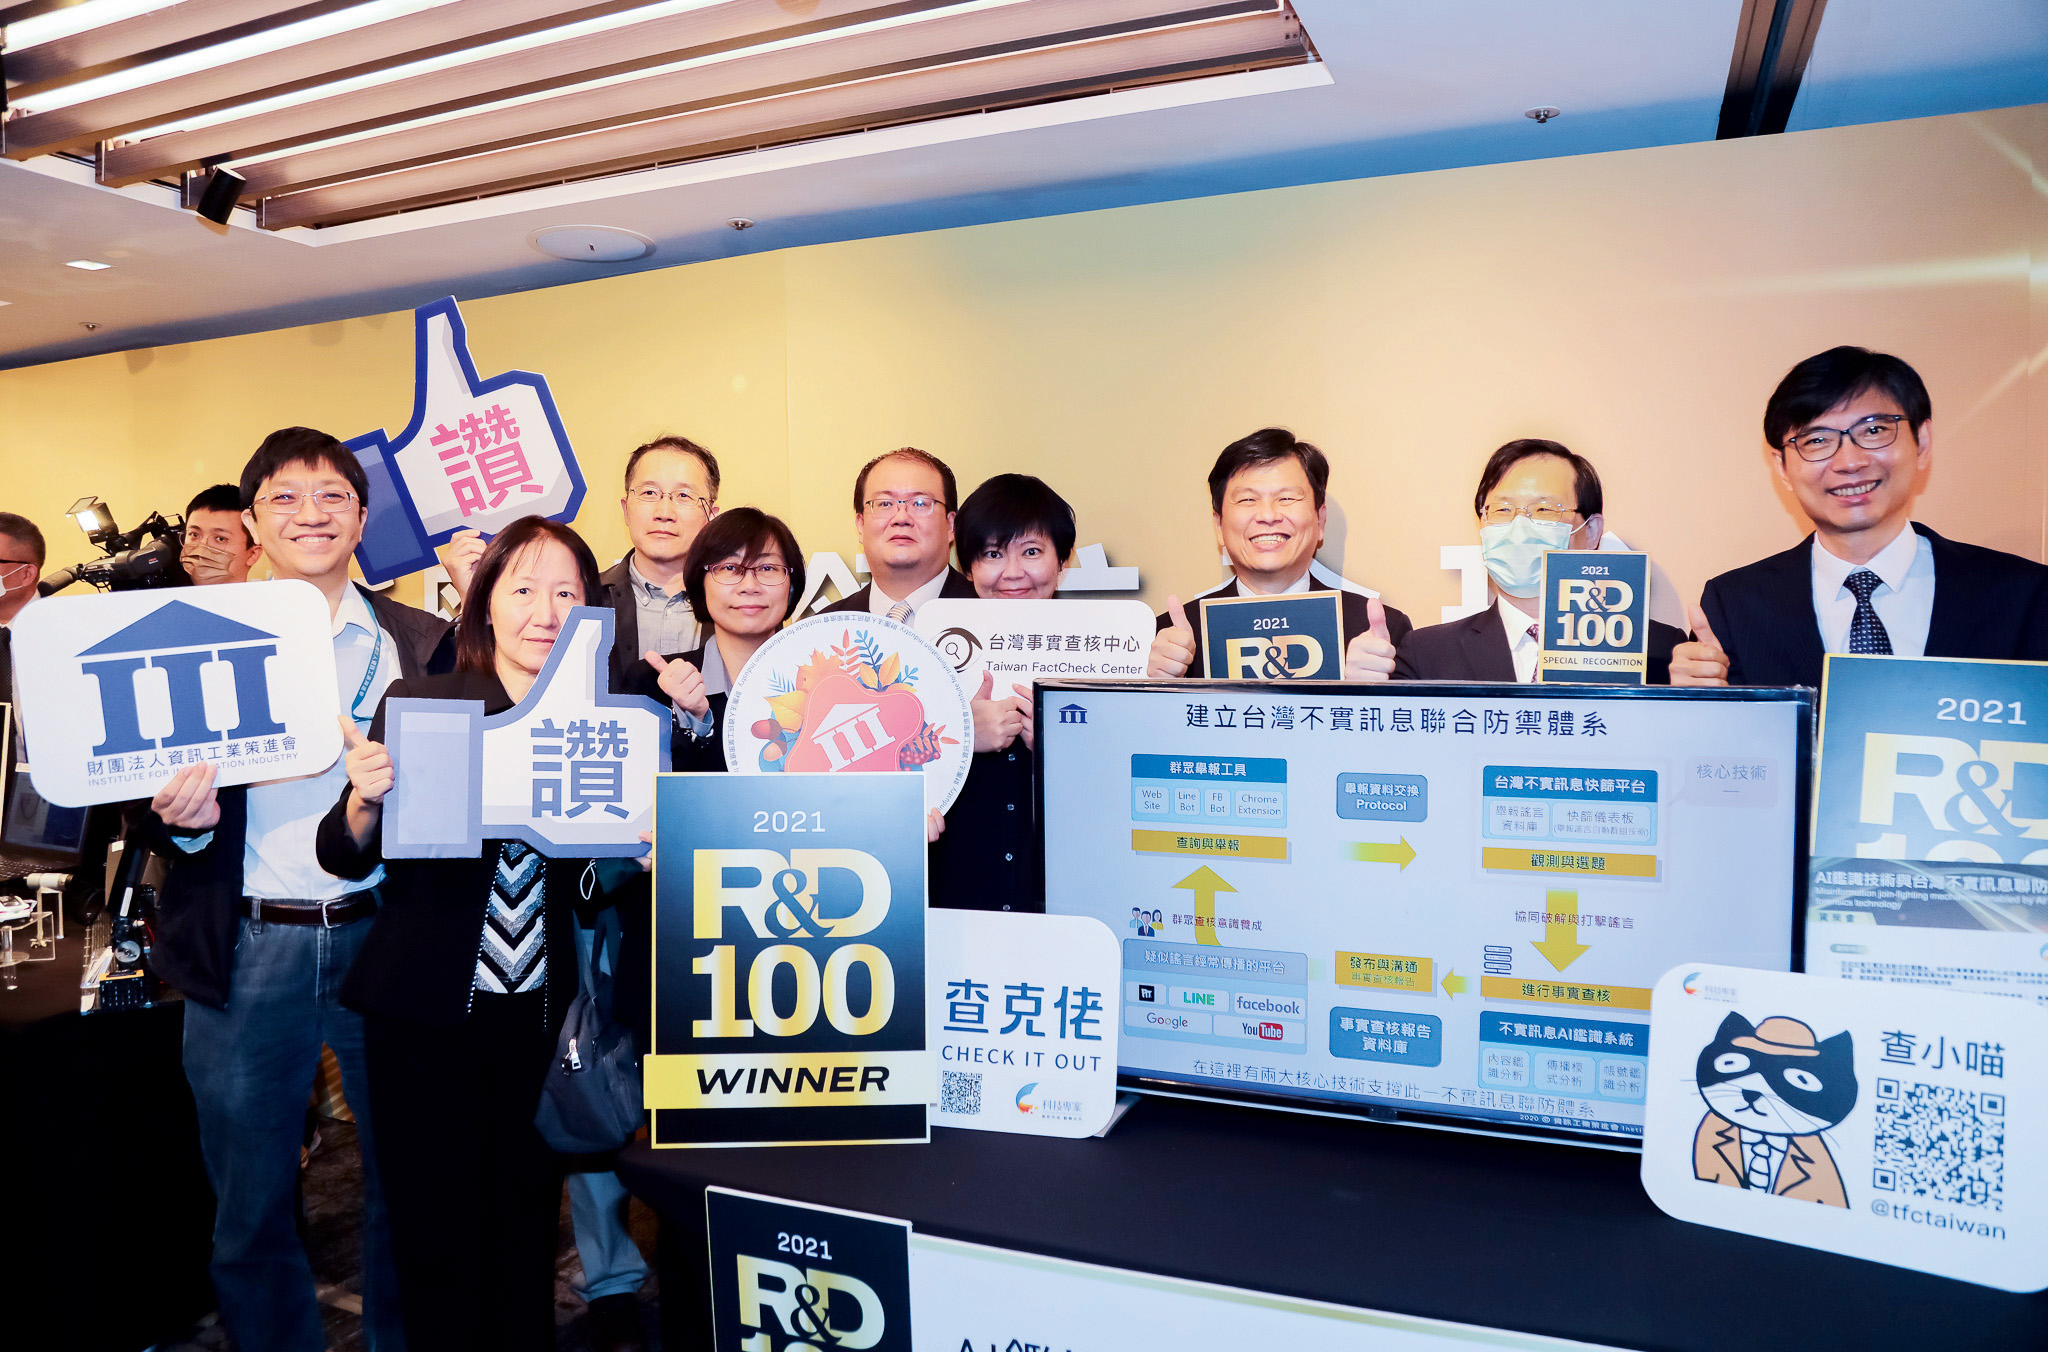 資策會與台灣事實查核中心合作的研發成果亮眼，榮獲2021年全球百大科技研發獎(R&D 100 Awards)及企業社會責任特別貢獻獎雙重肯定。